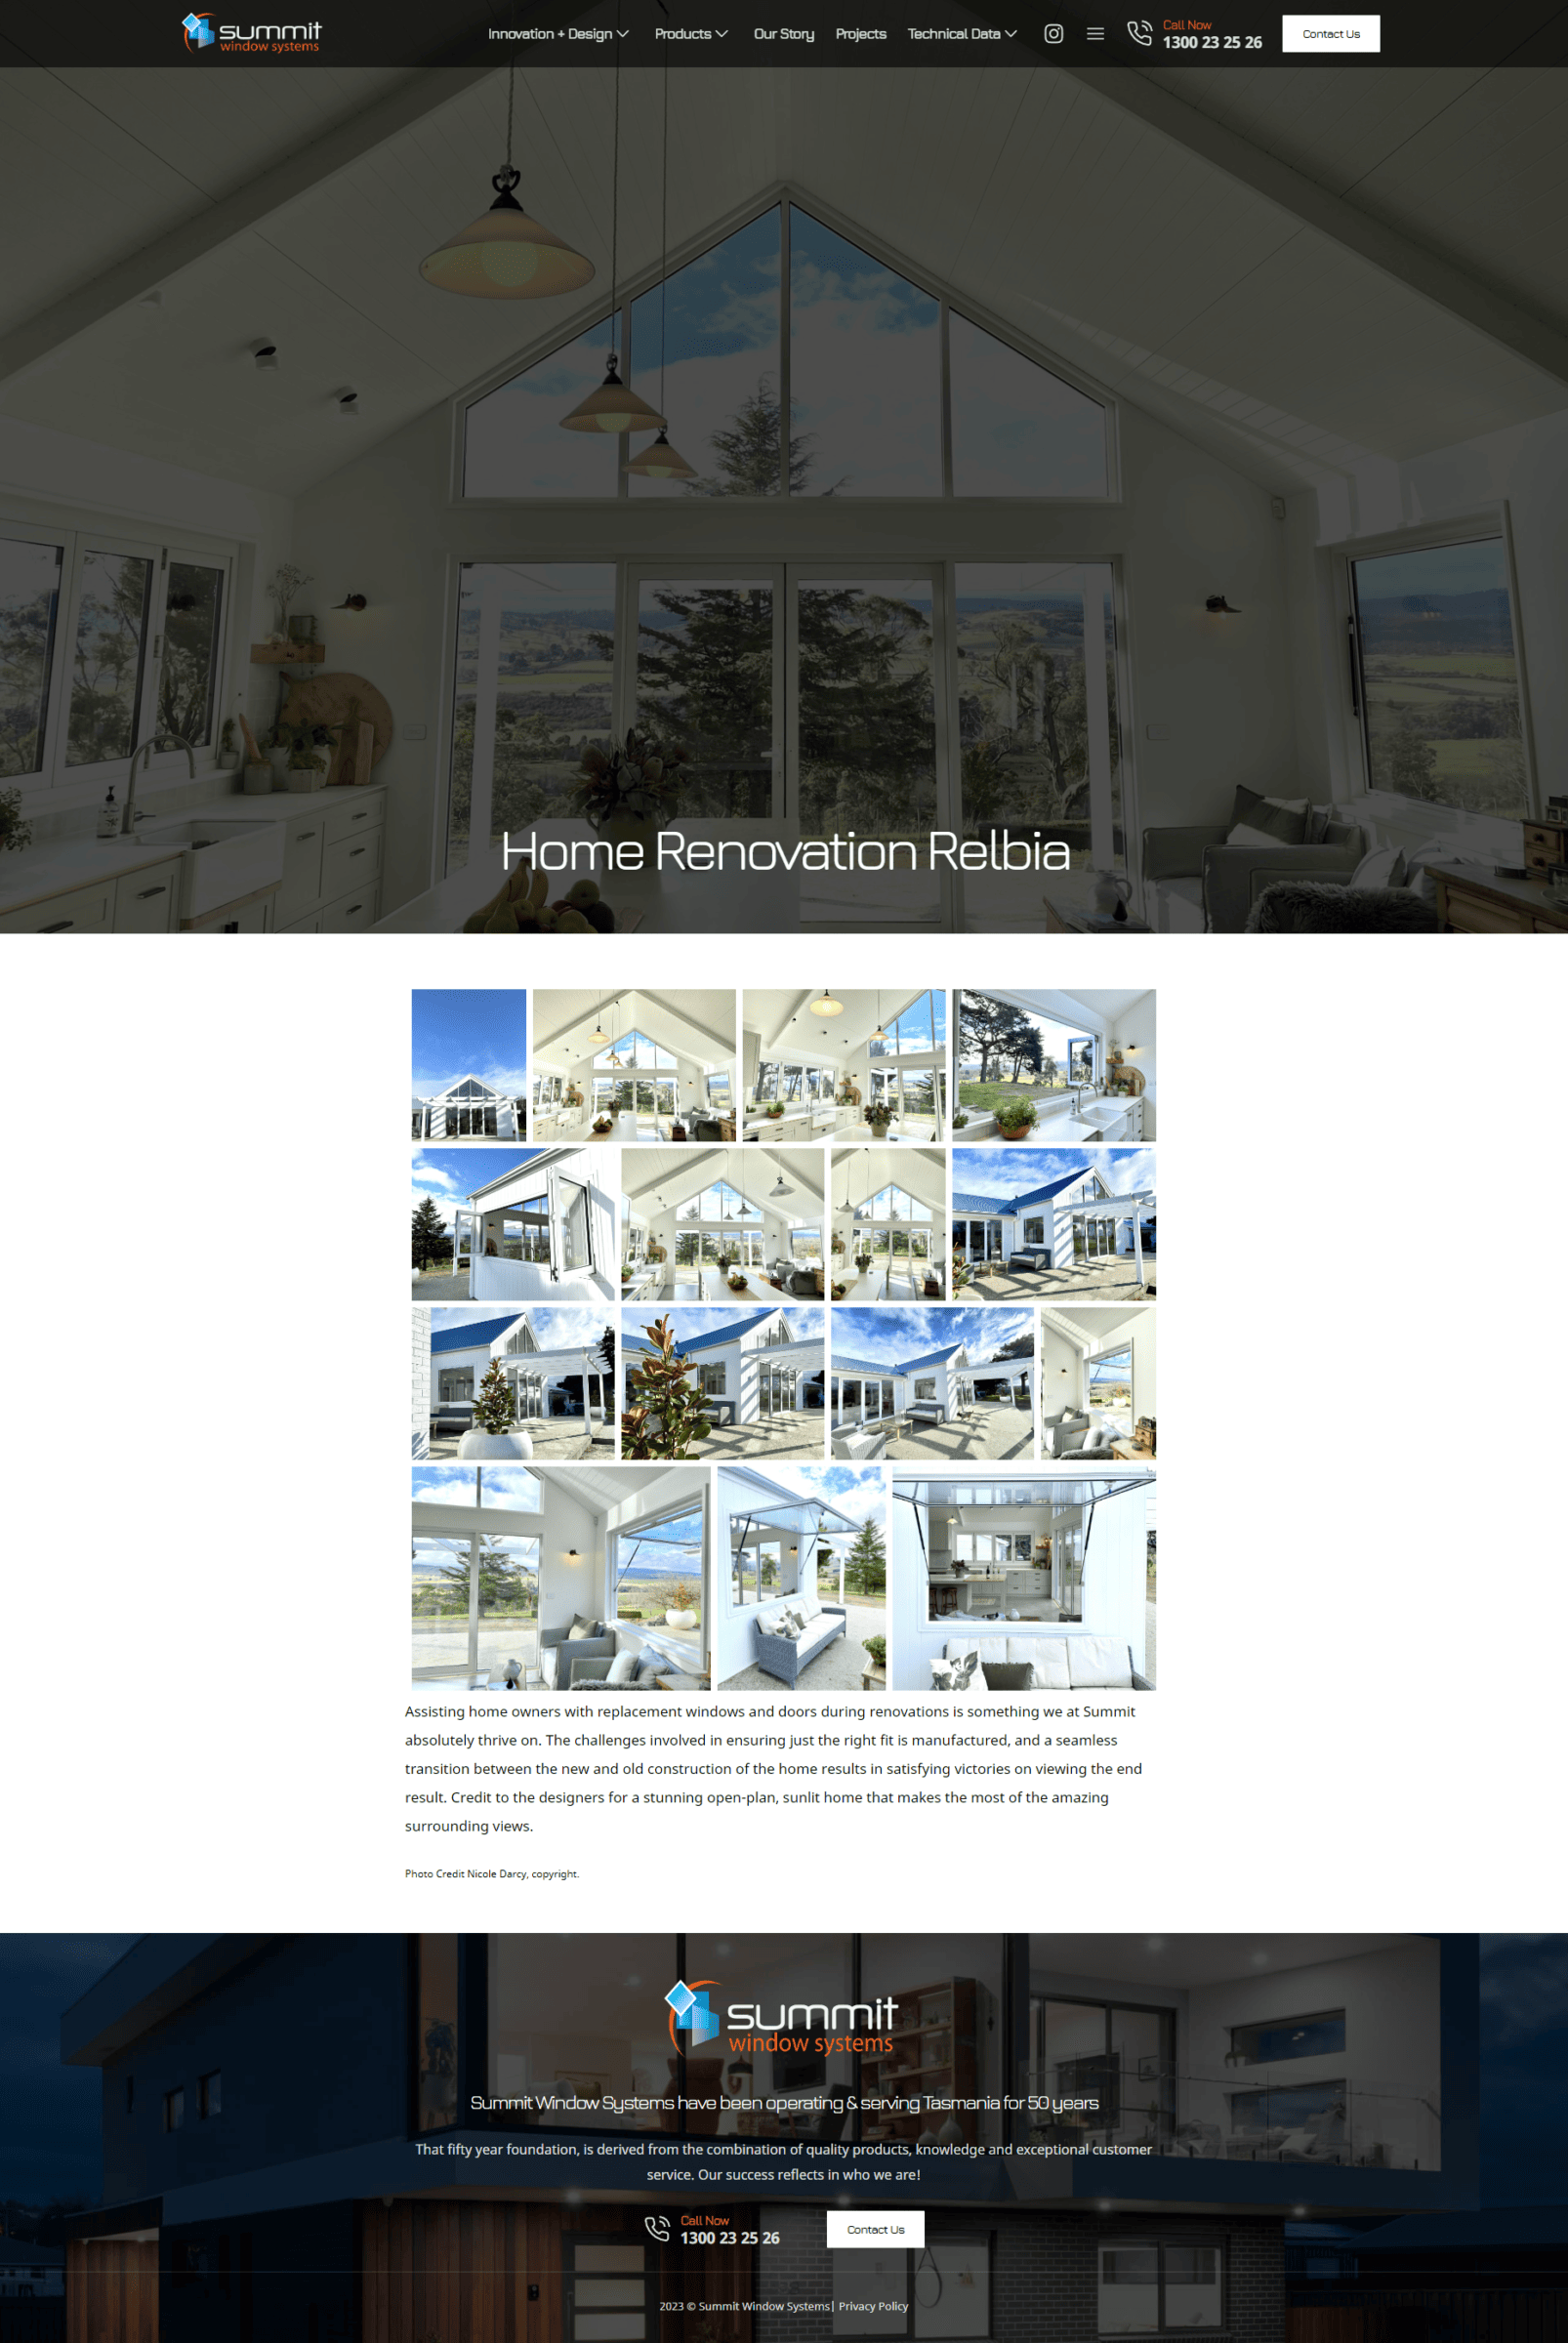 A website design for a home renovation company.